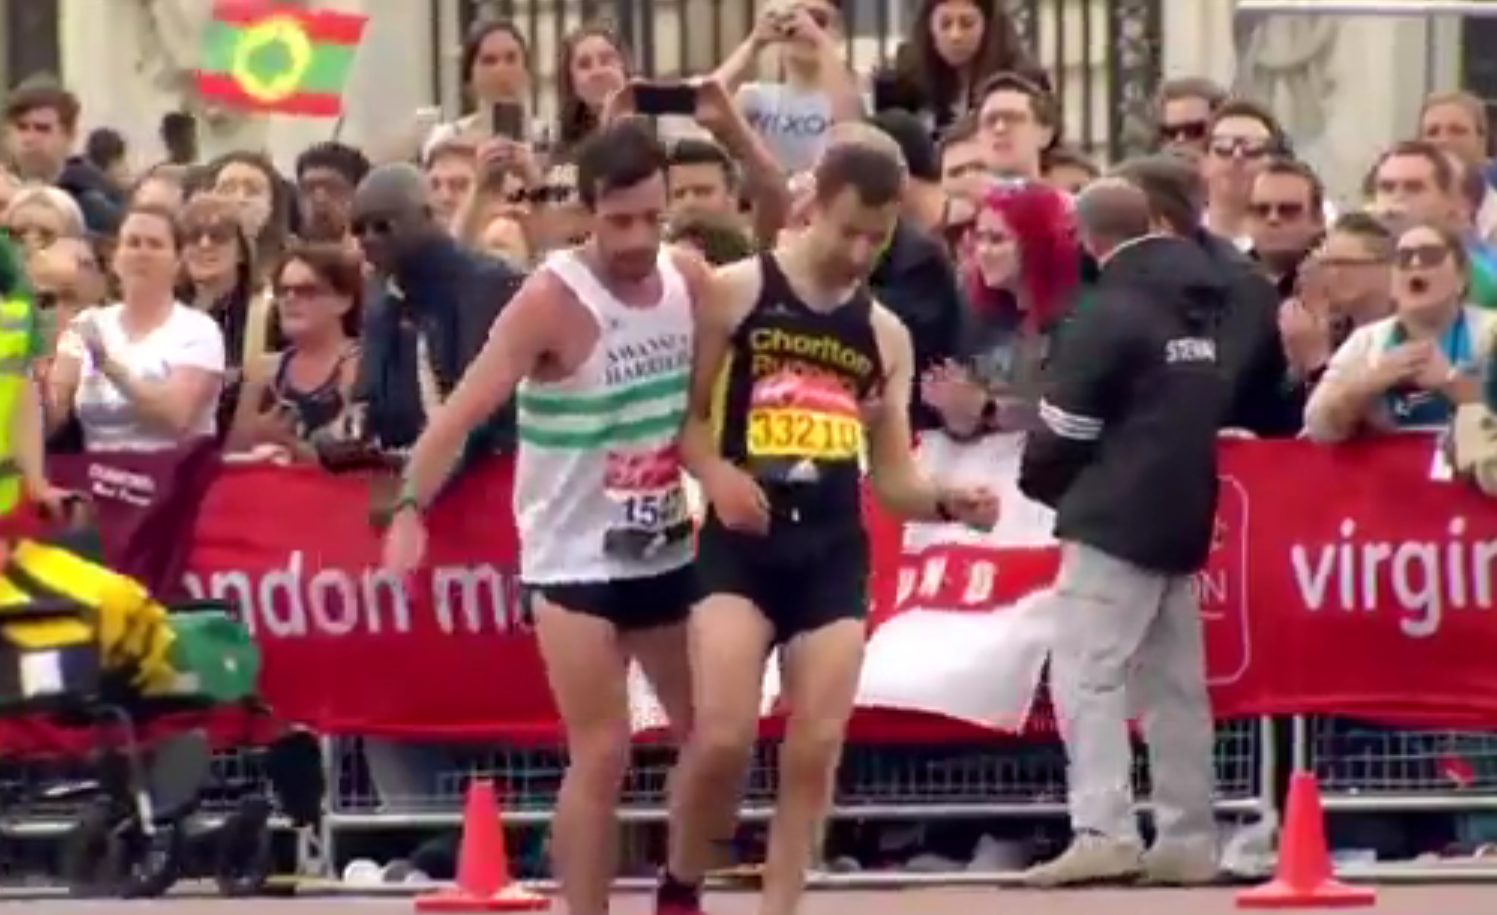 Maratona de Londres. Atleta ajuda adversário a poucos metros da meta [vídeo]